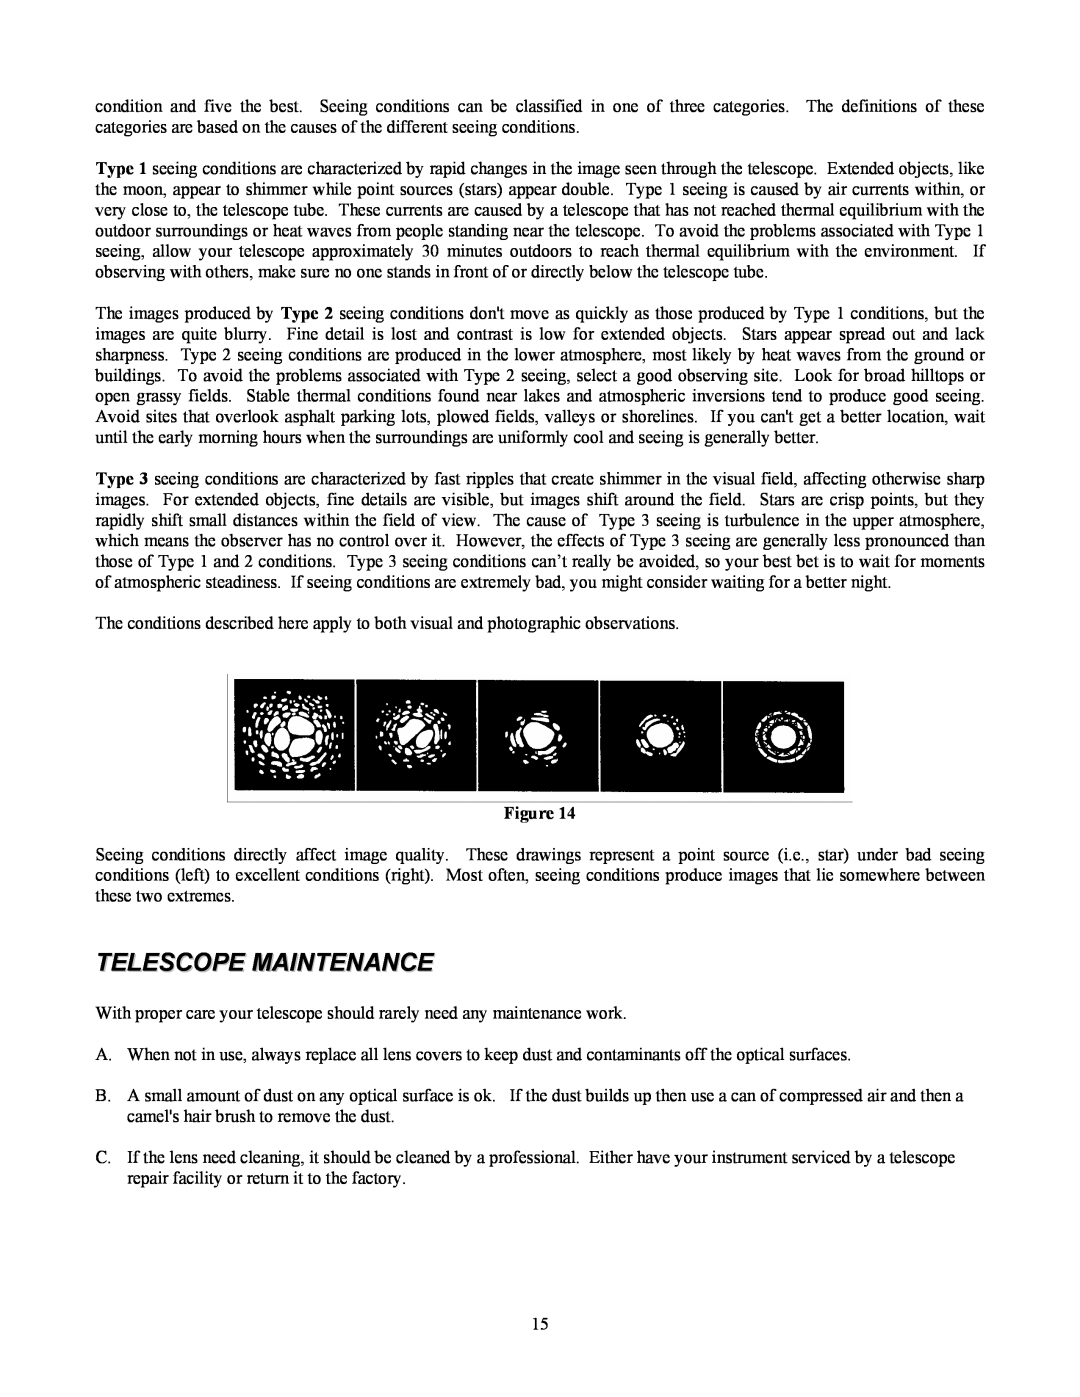 Celestron 80 manual Telescope Maintenance 